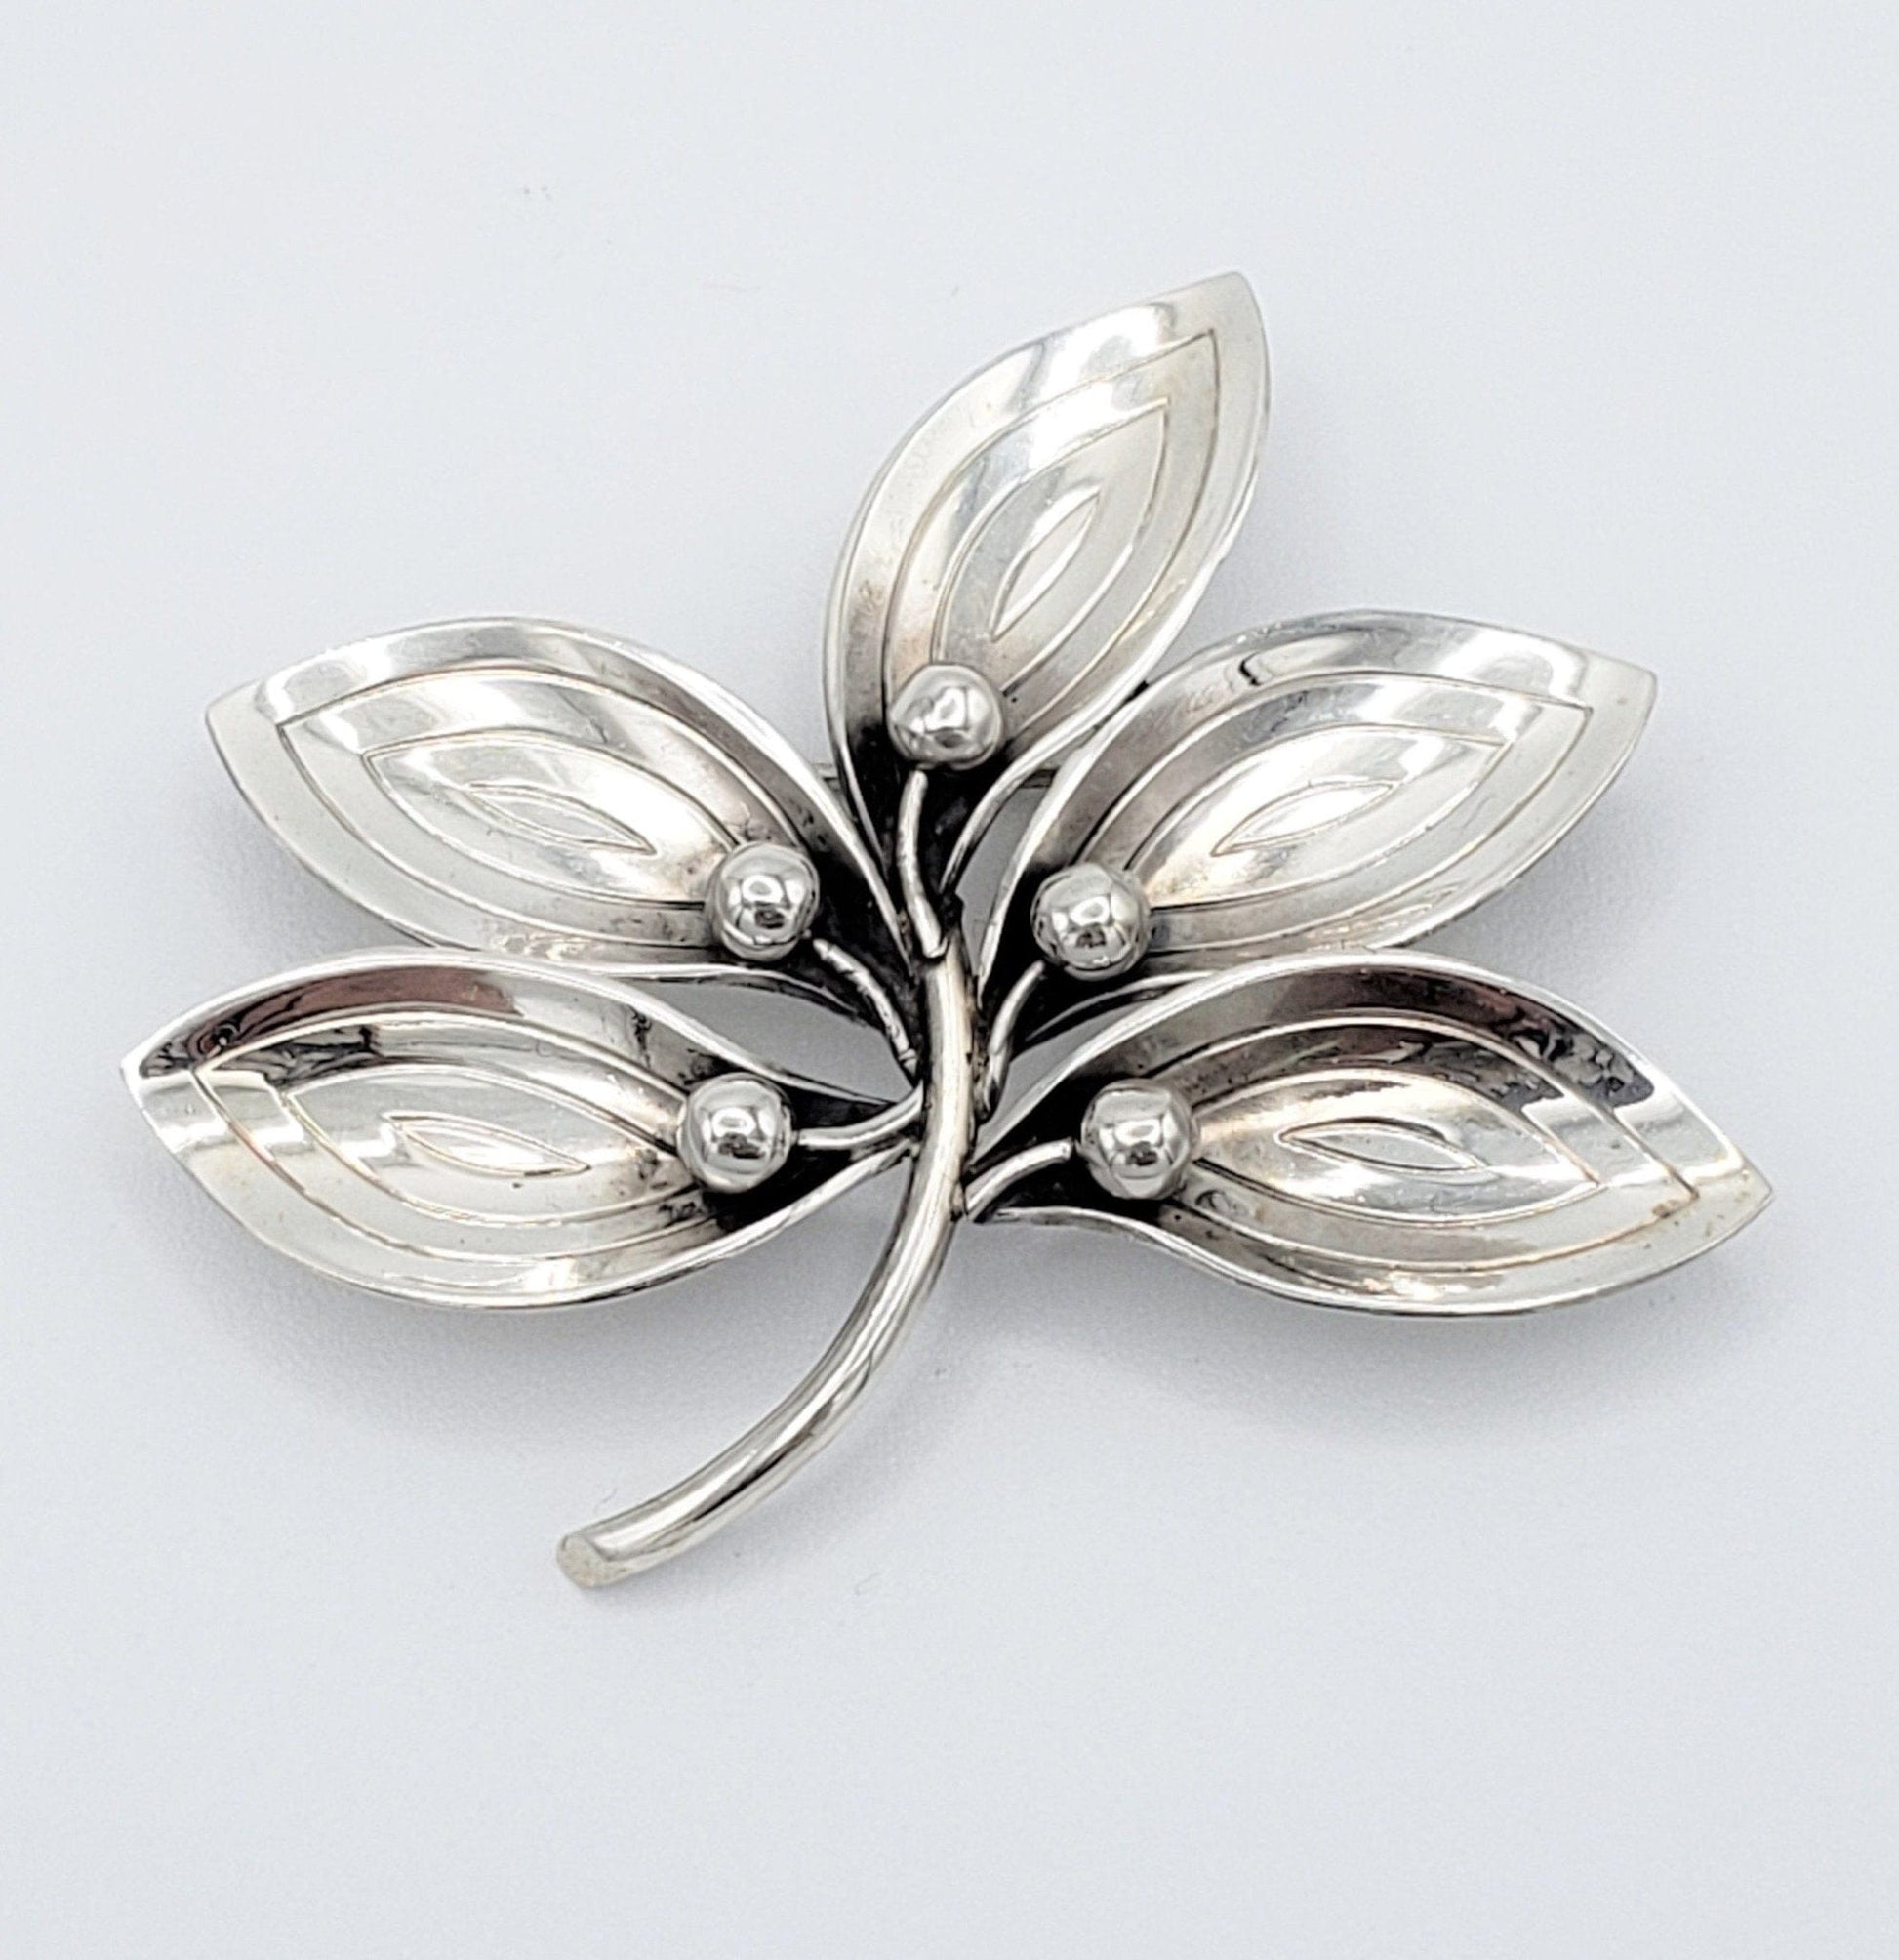 A & K Denmark Jewelry Denmark Designer Aarre Krogh A&K Sterling Silver 5 Leaf Brooch Pendant 1950s